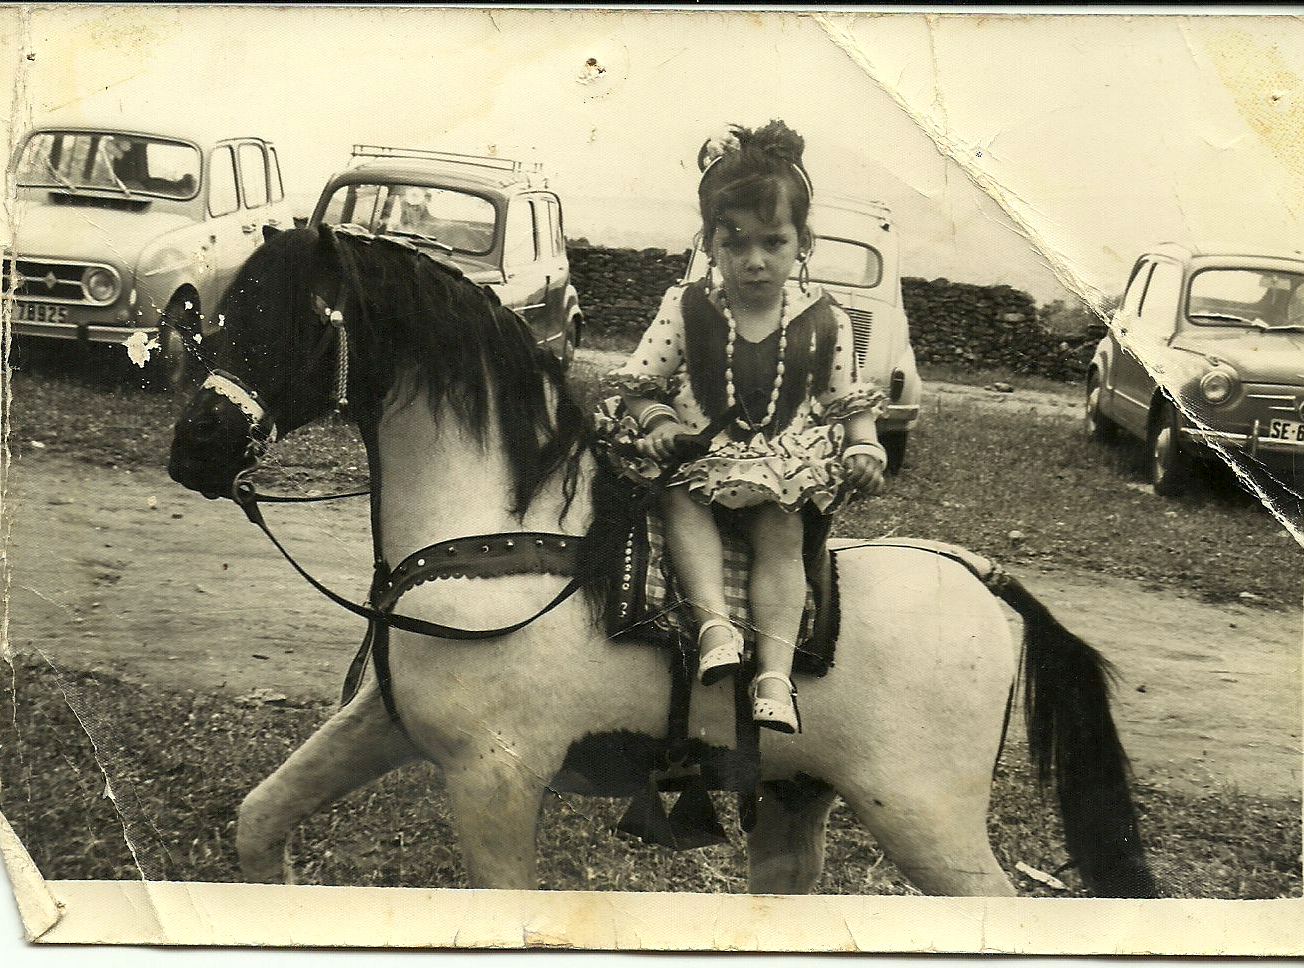 EL SEAT 600. En esta imagen vemos a Ana Carmen Andrades posando para el fotógrafo en romería en un caballo de cartón en 1969 o 1970. Detrás podemos ver el parque automovilístico de aquellos años: tres seítas y Renault "Cuatro latas". El Seat 600 fue mucho más que el primer coche de muchas familias, fue el símbolo de la época desde que comenzara a fabricarse en 1957.